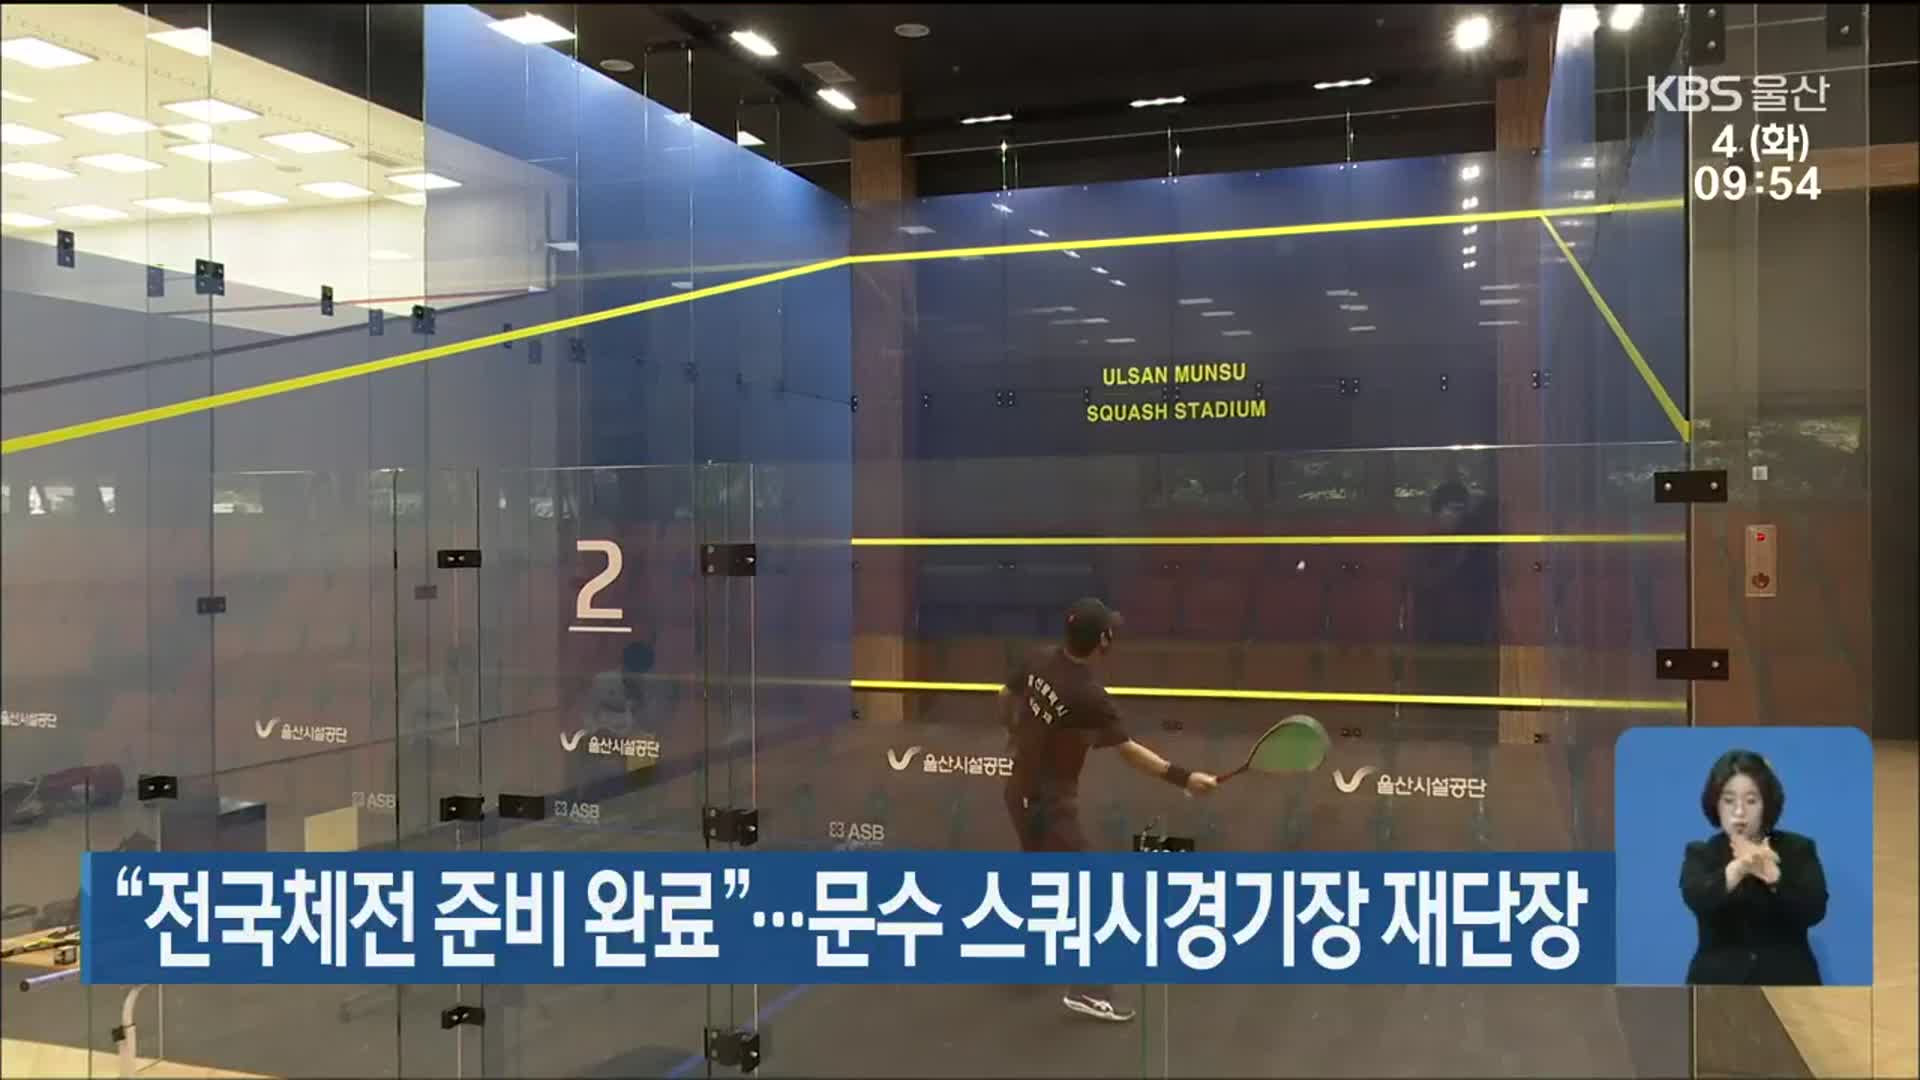 “전국체전 준비 완료”…문수 스쿼시경기장 재단장